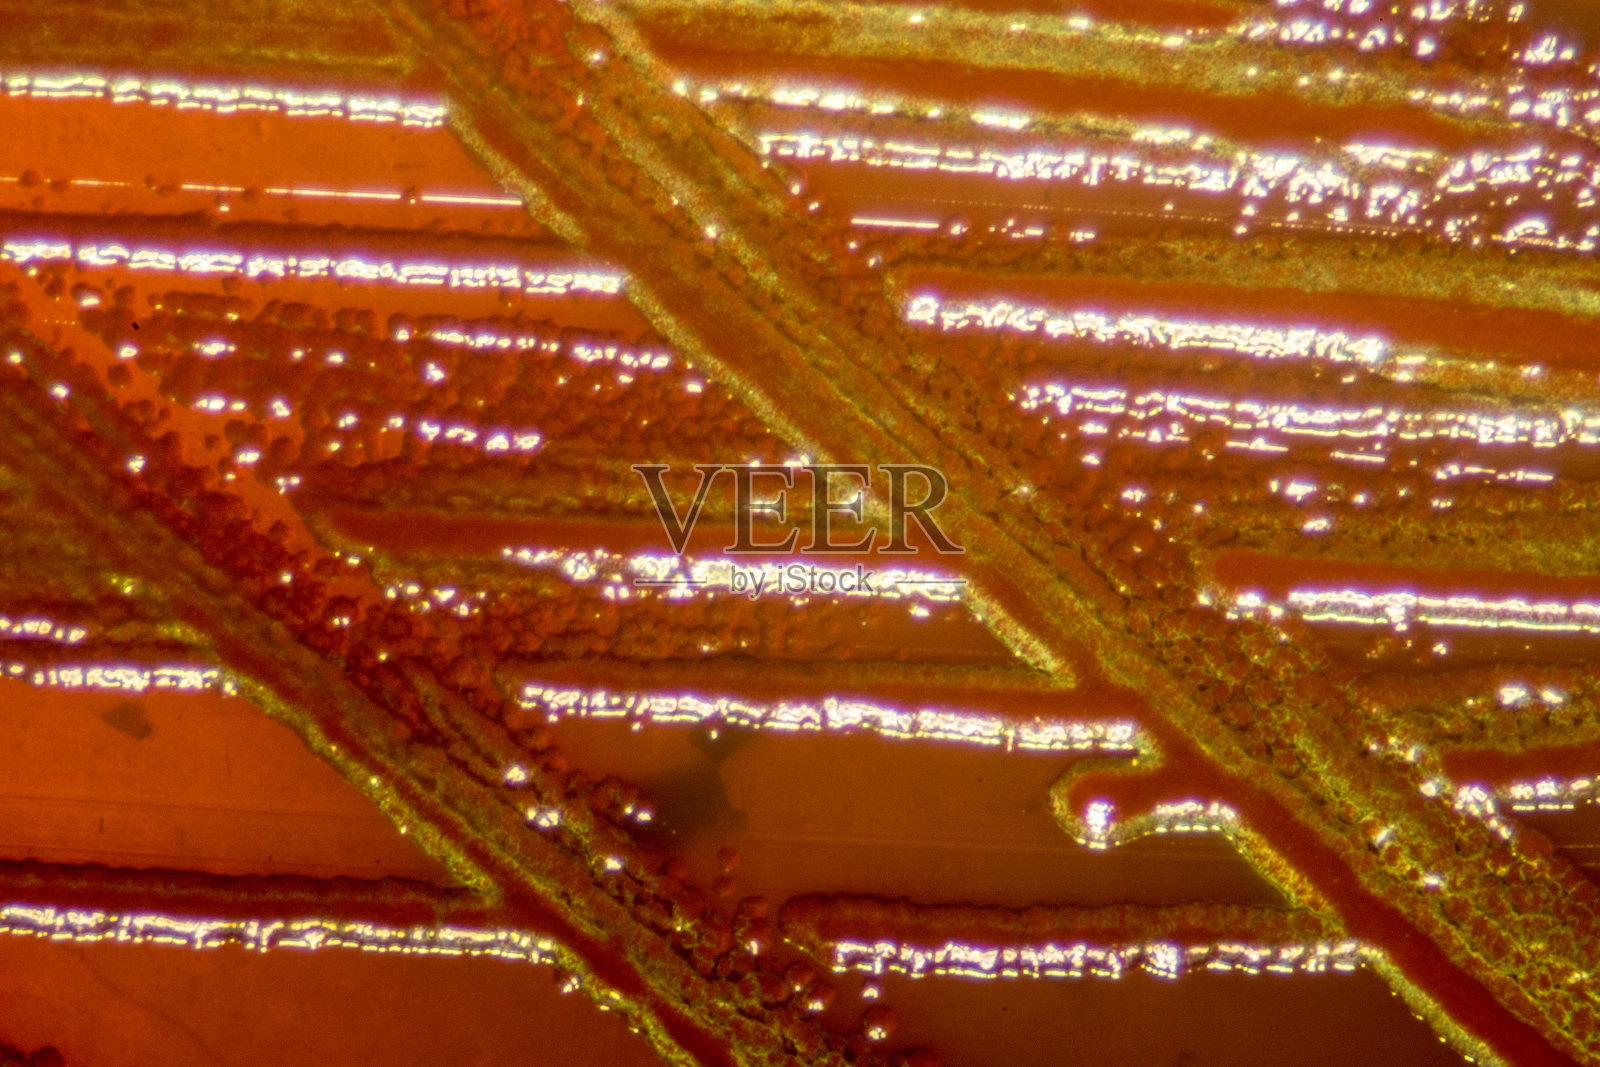 大肠杆菌(e.c oli)是一种革兰氏阴性，兼性厌氧，杆状大肠杆菌属细菌，常见于温血微生物(恒温微生物)的小肠照片摄影图片